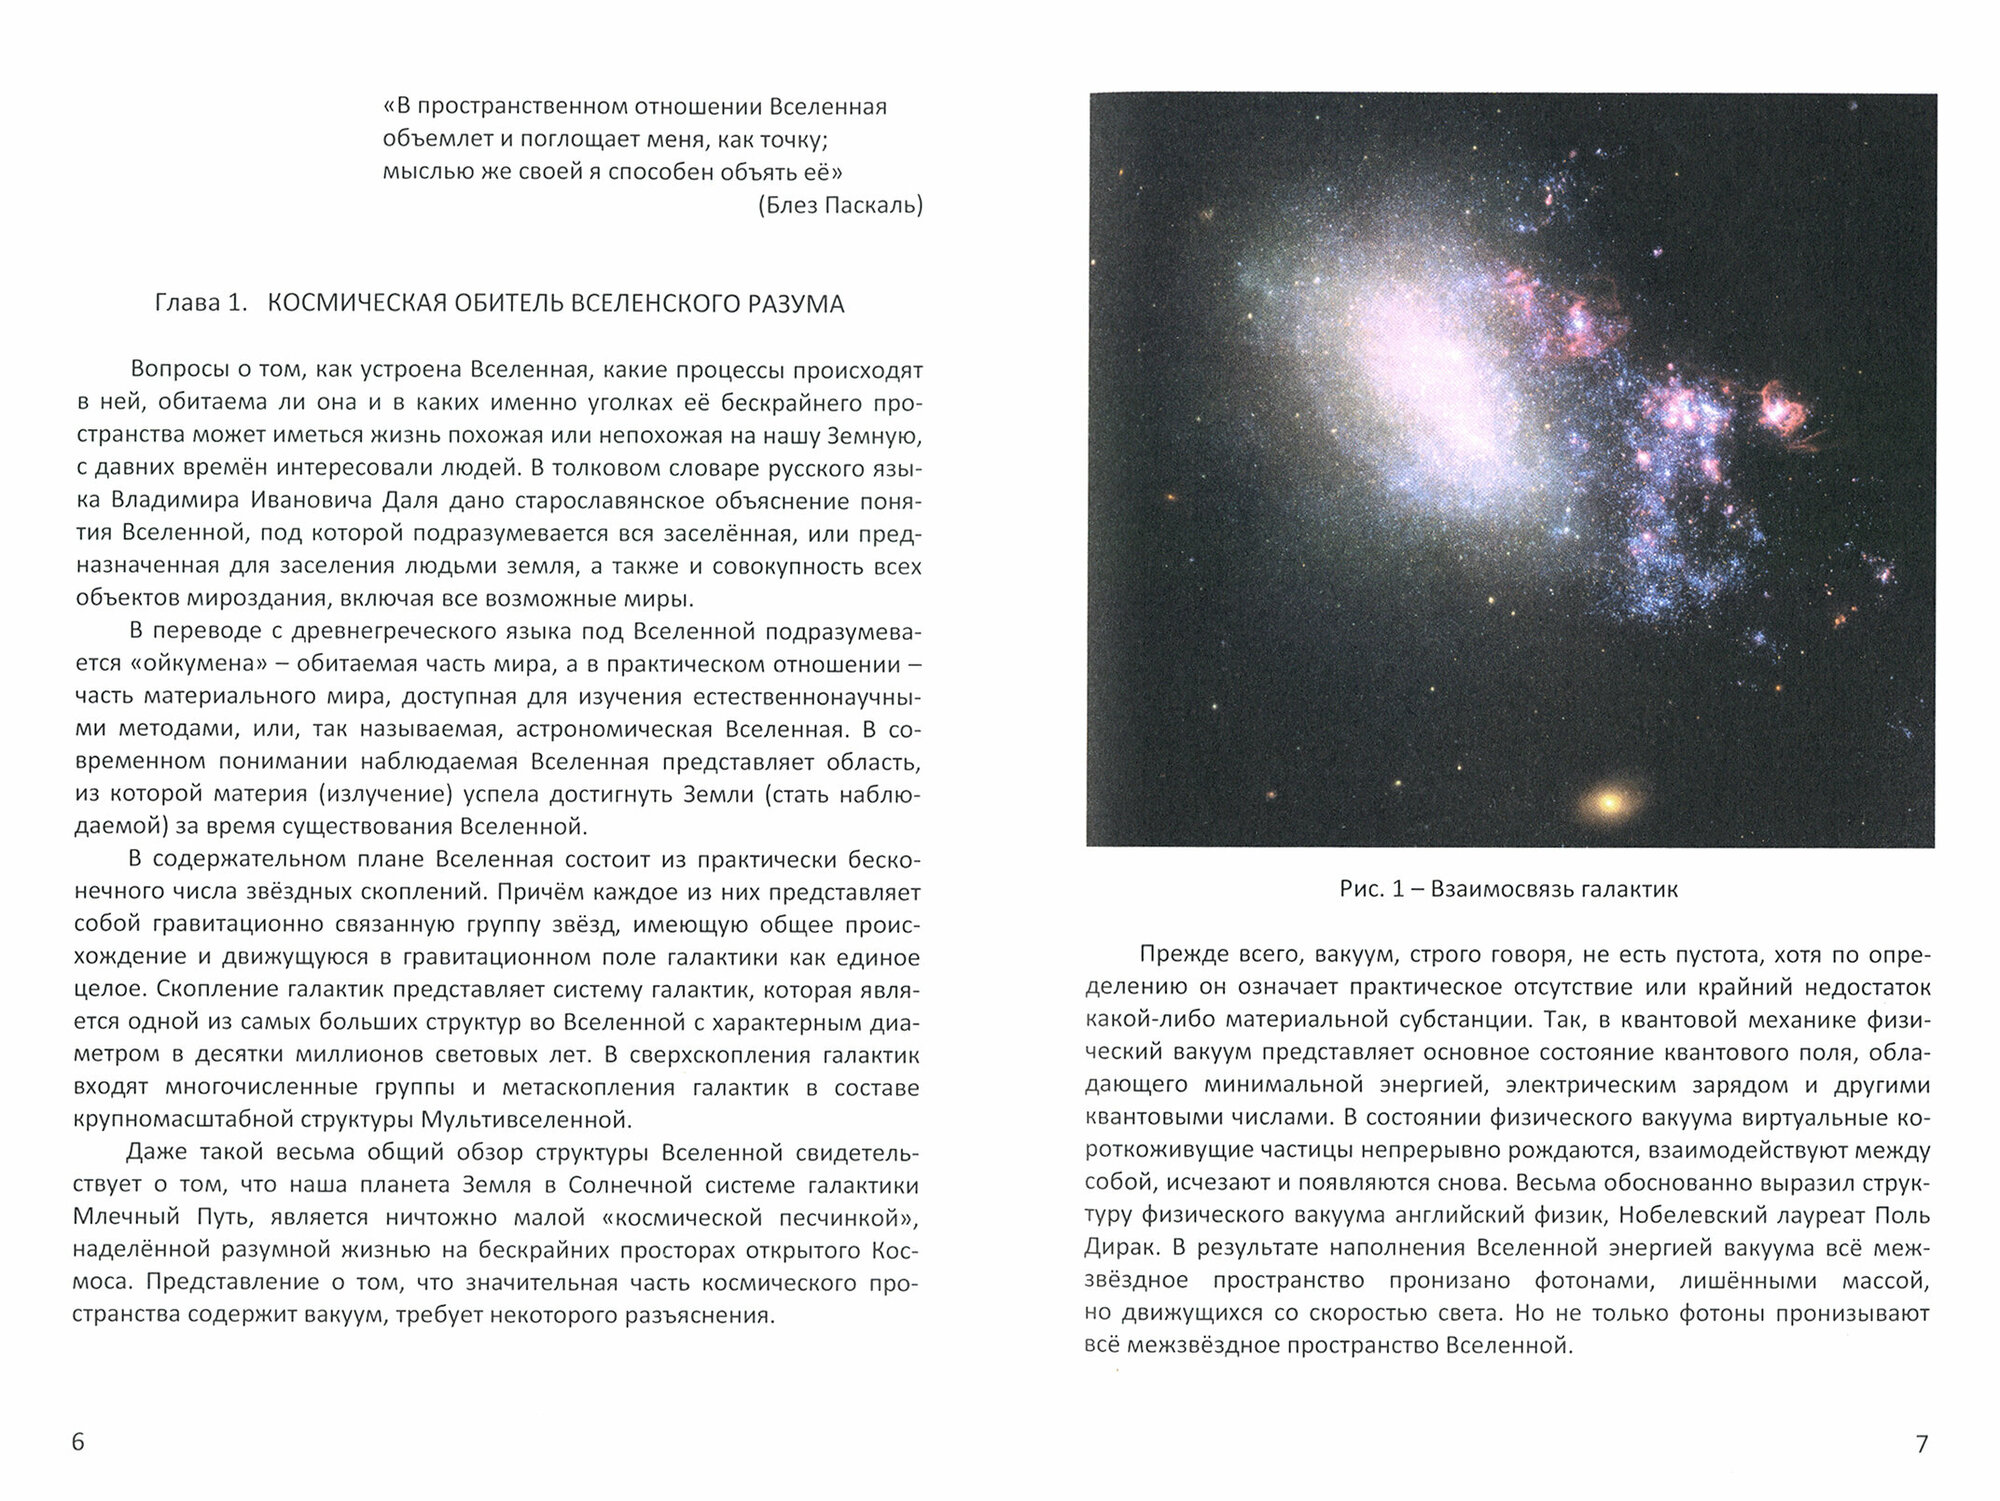 Точки разума во вселенной (научные гипотезы и реальные ожидания) - фото №2